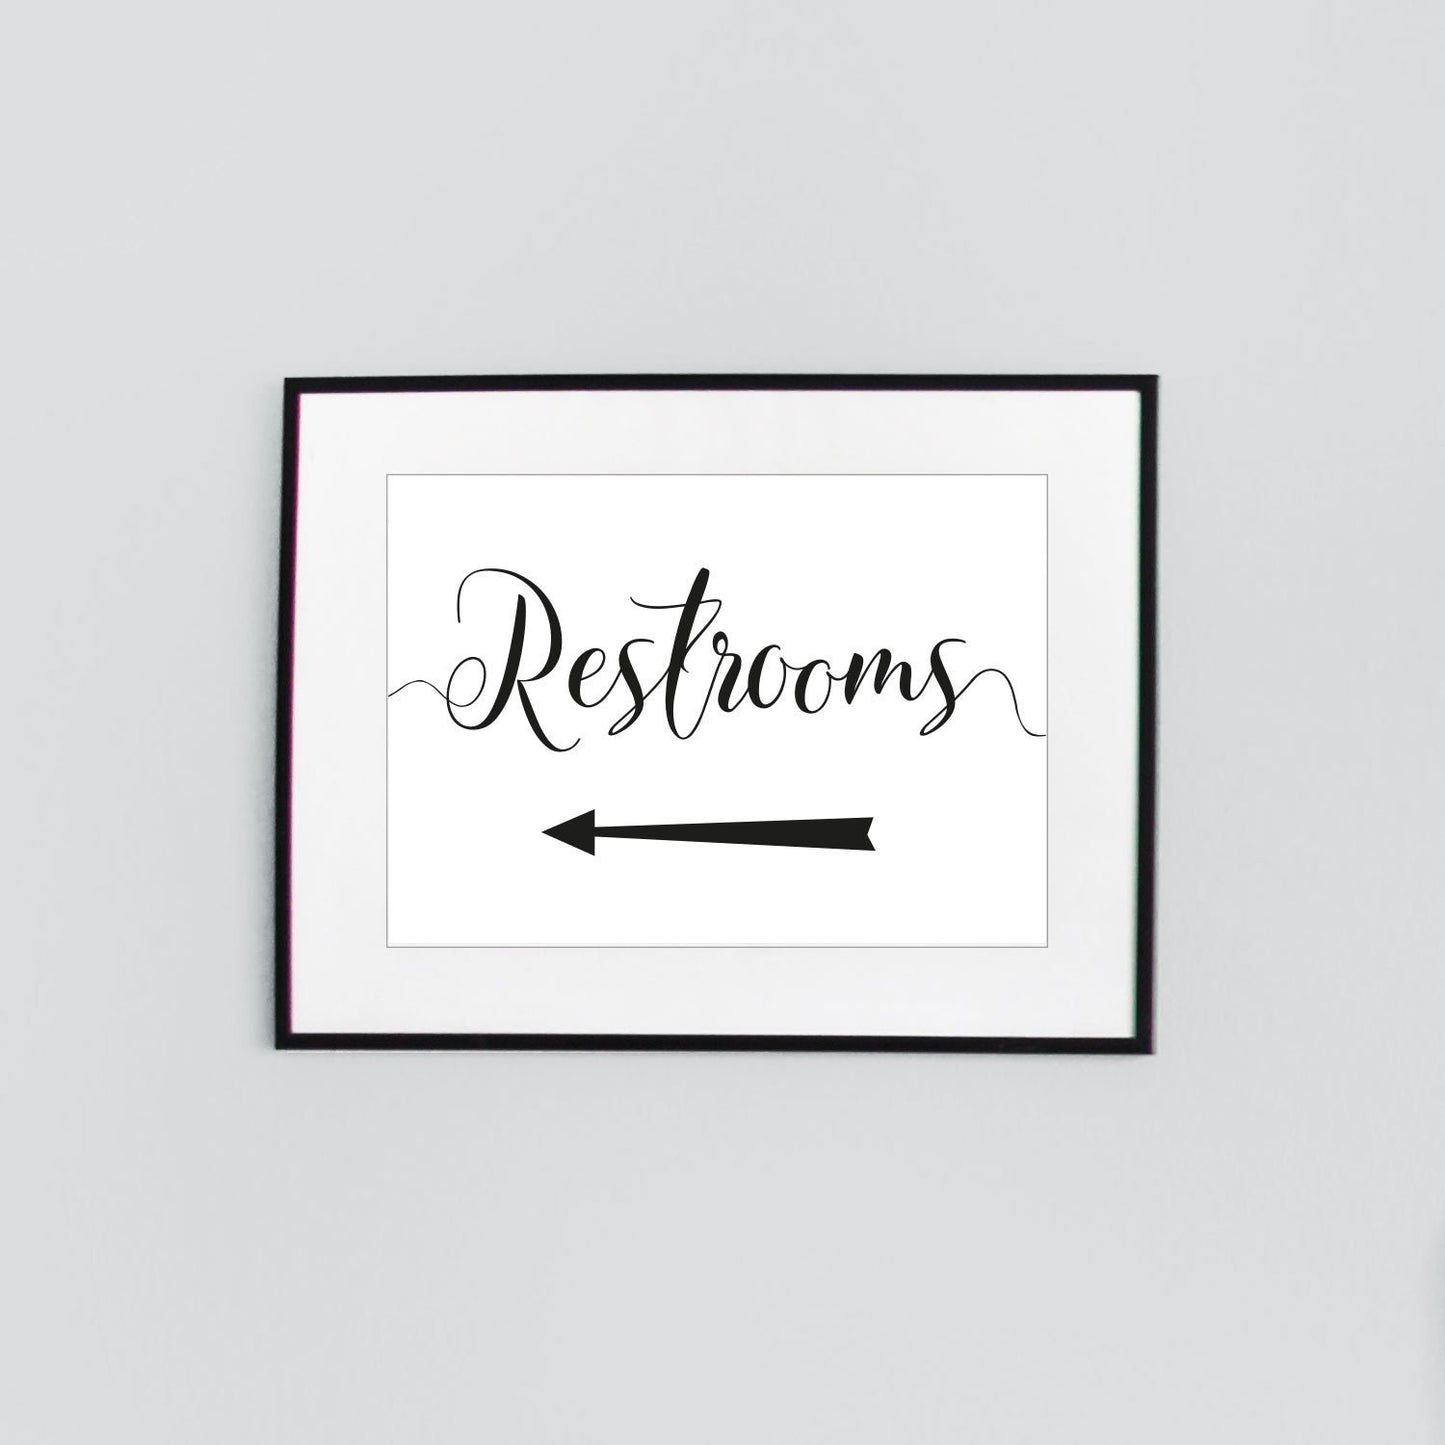 wedding restrooms sign framed print